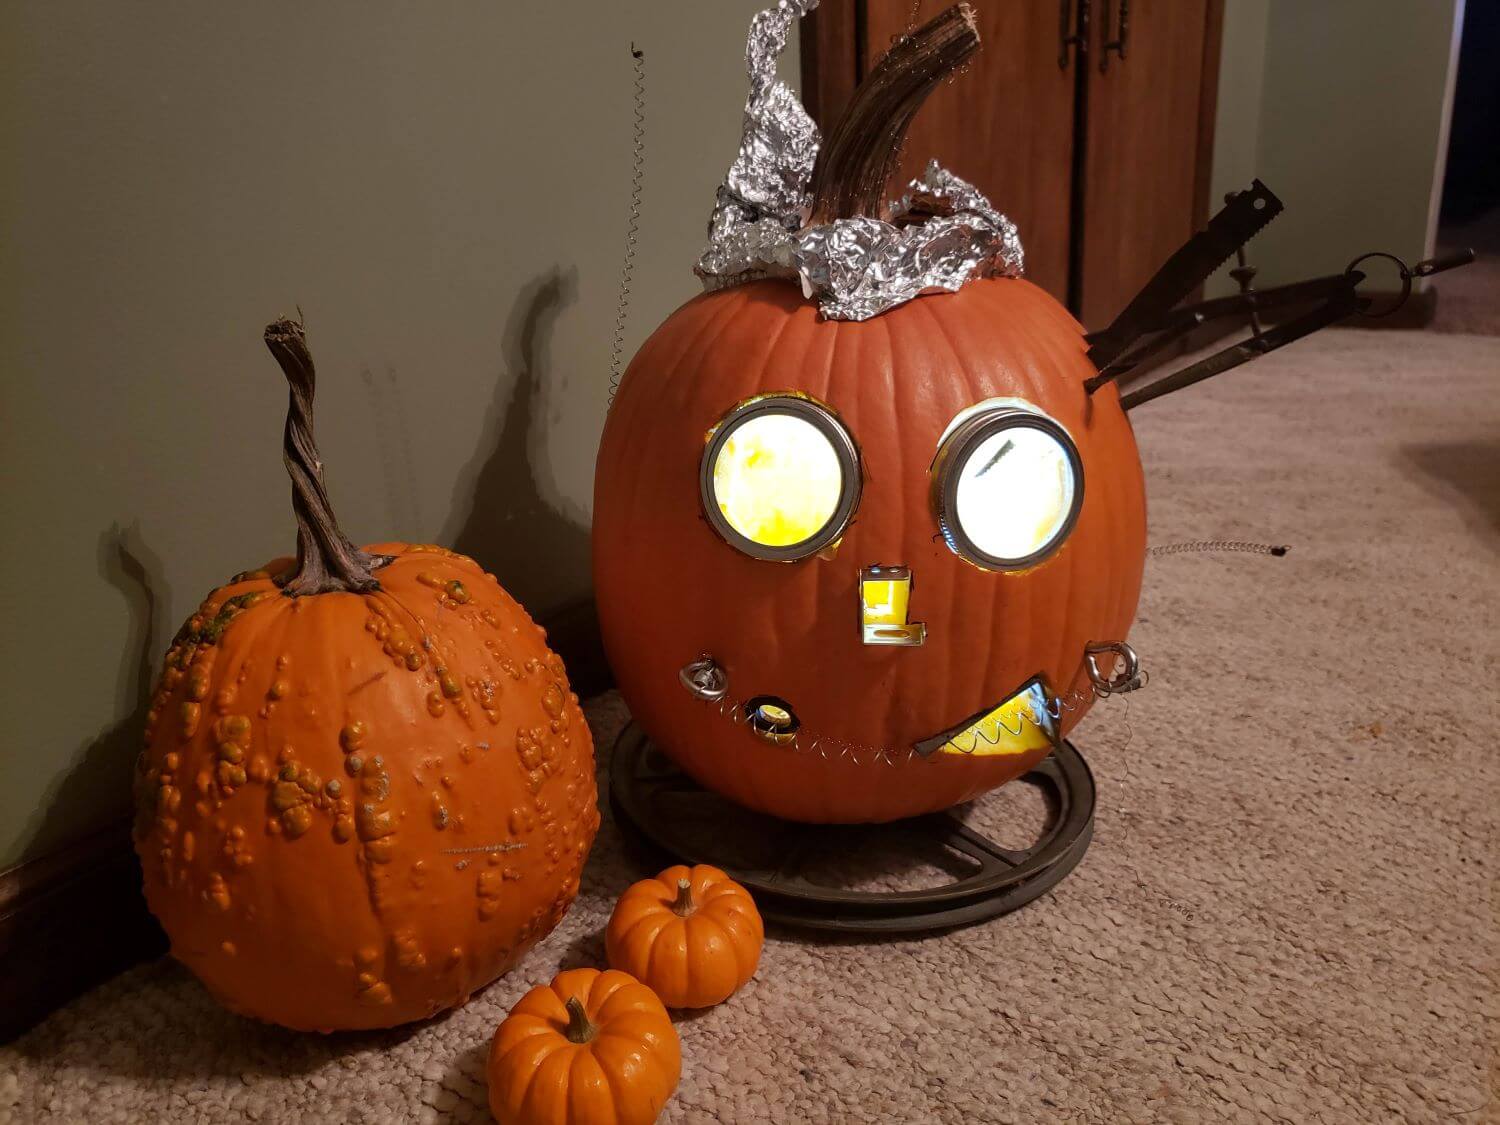 alt text =gourds and a pumpkin carved like a robot"